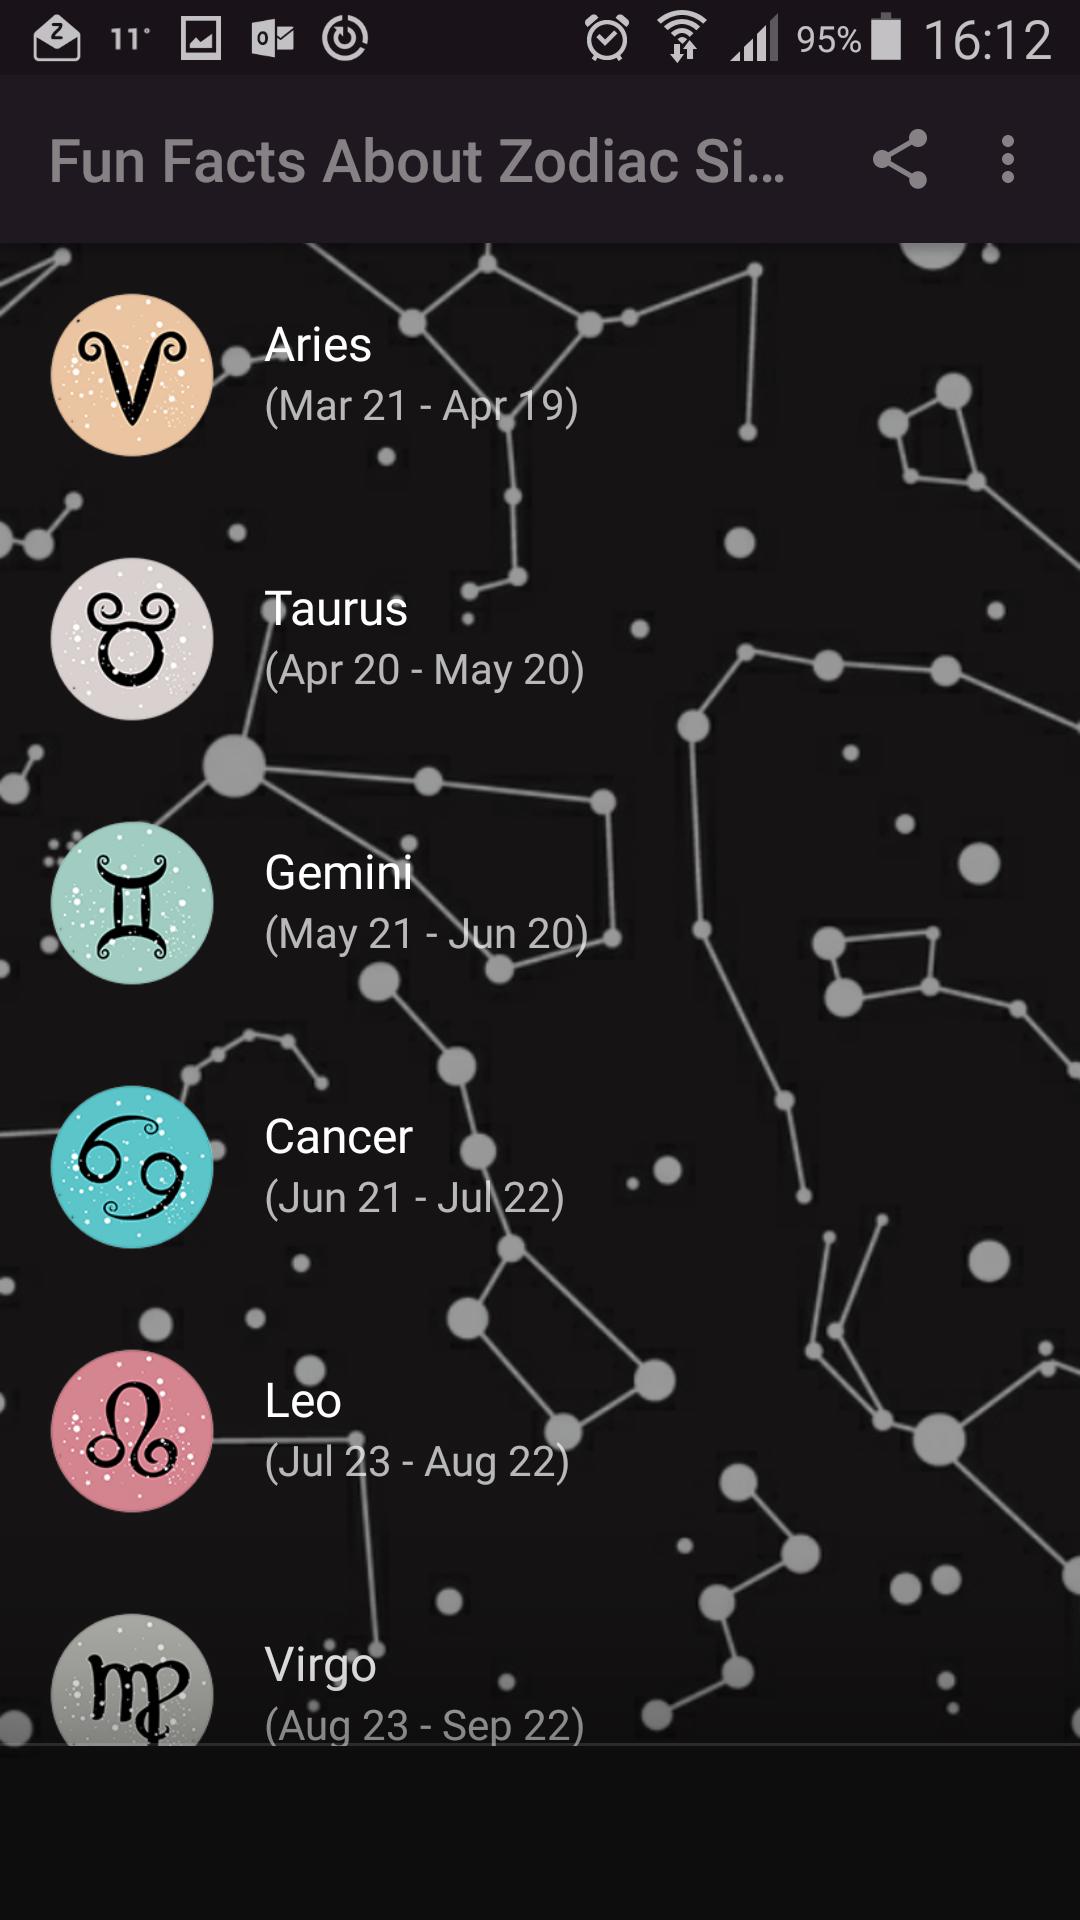 Quels sont les faits amusants sur les signes du zodiaque?